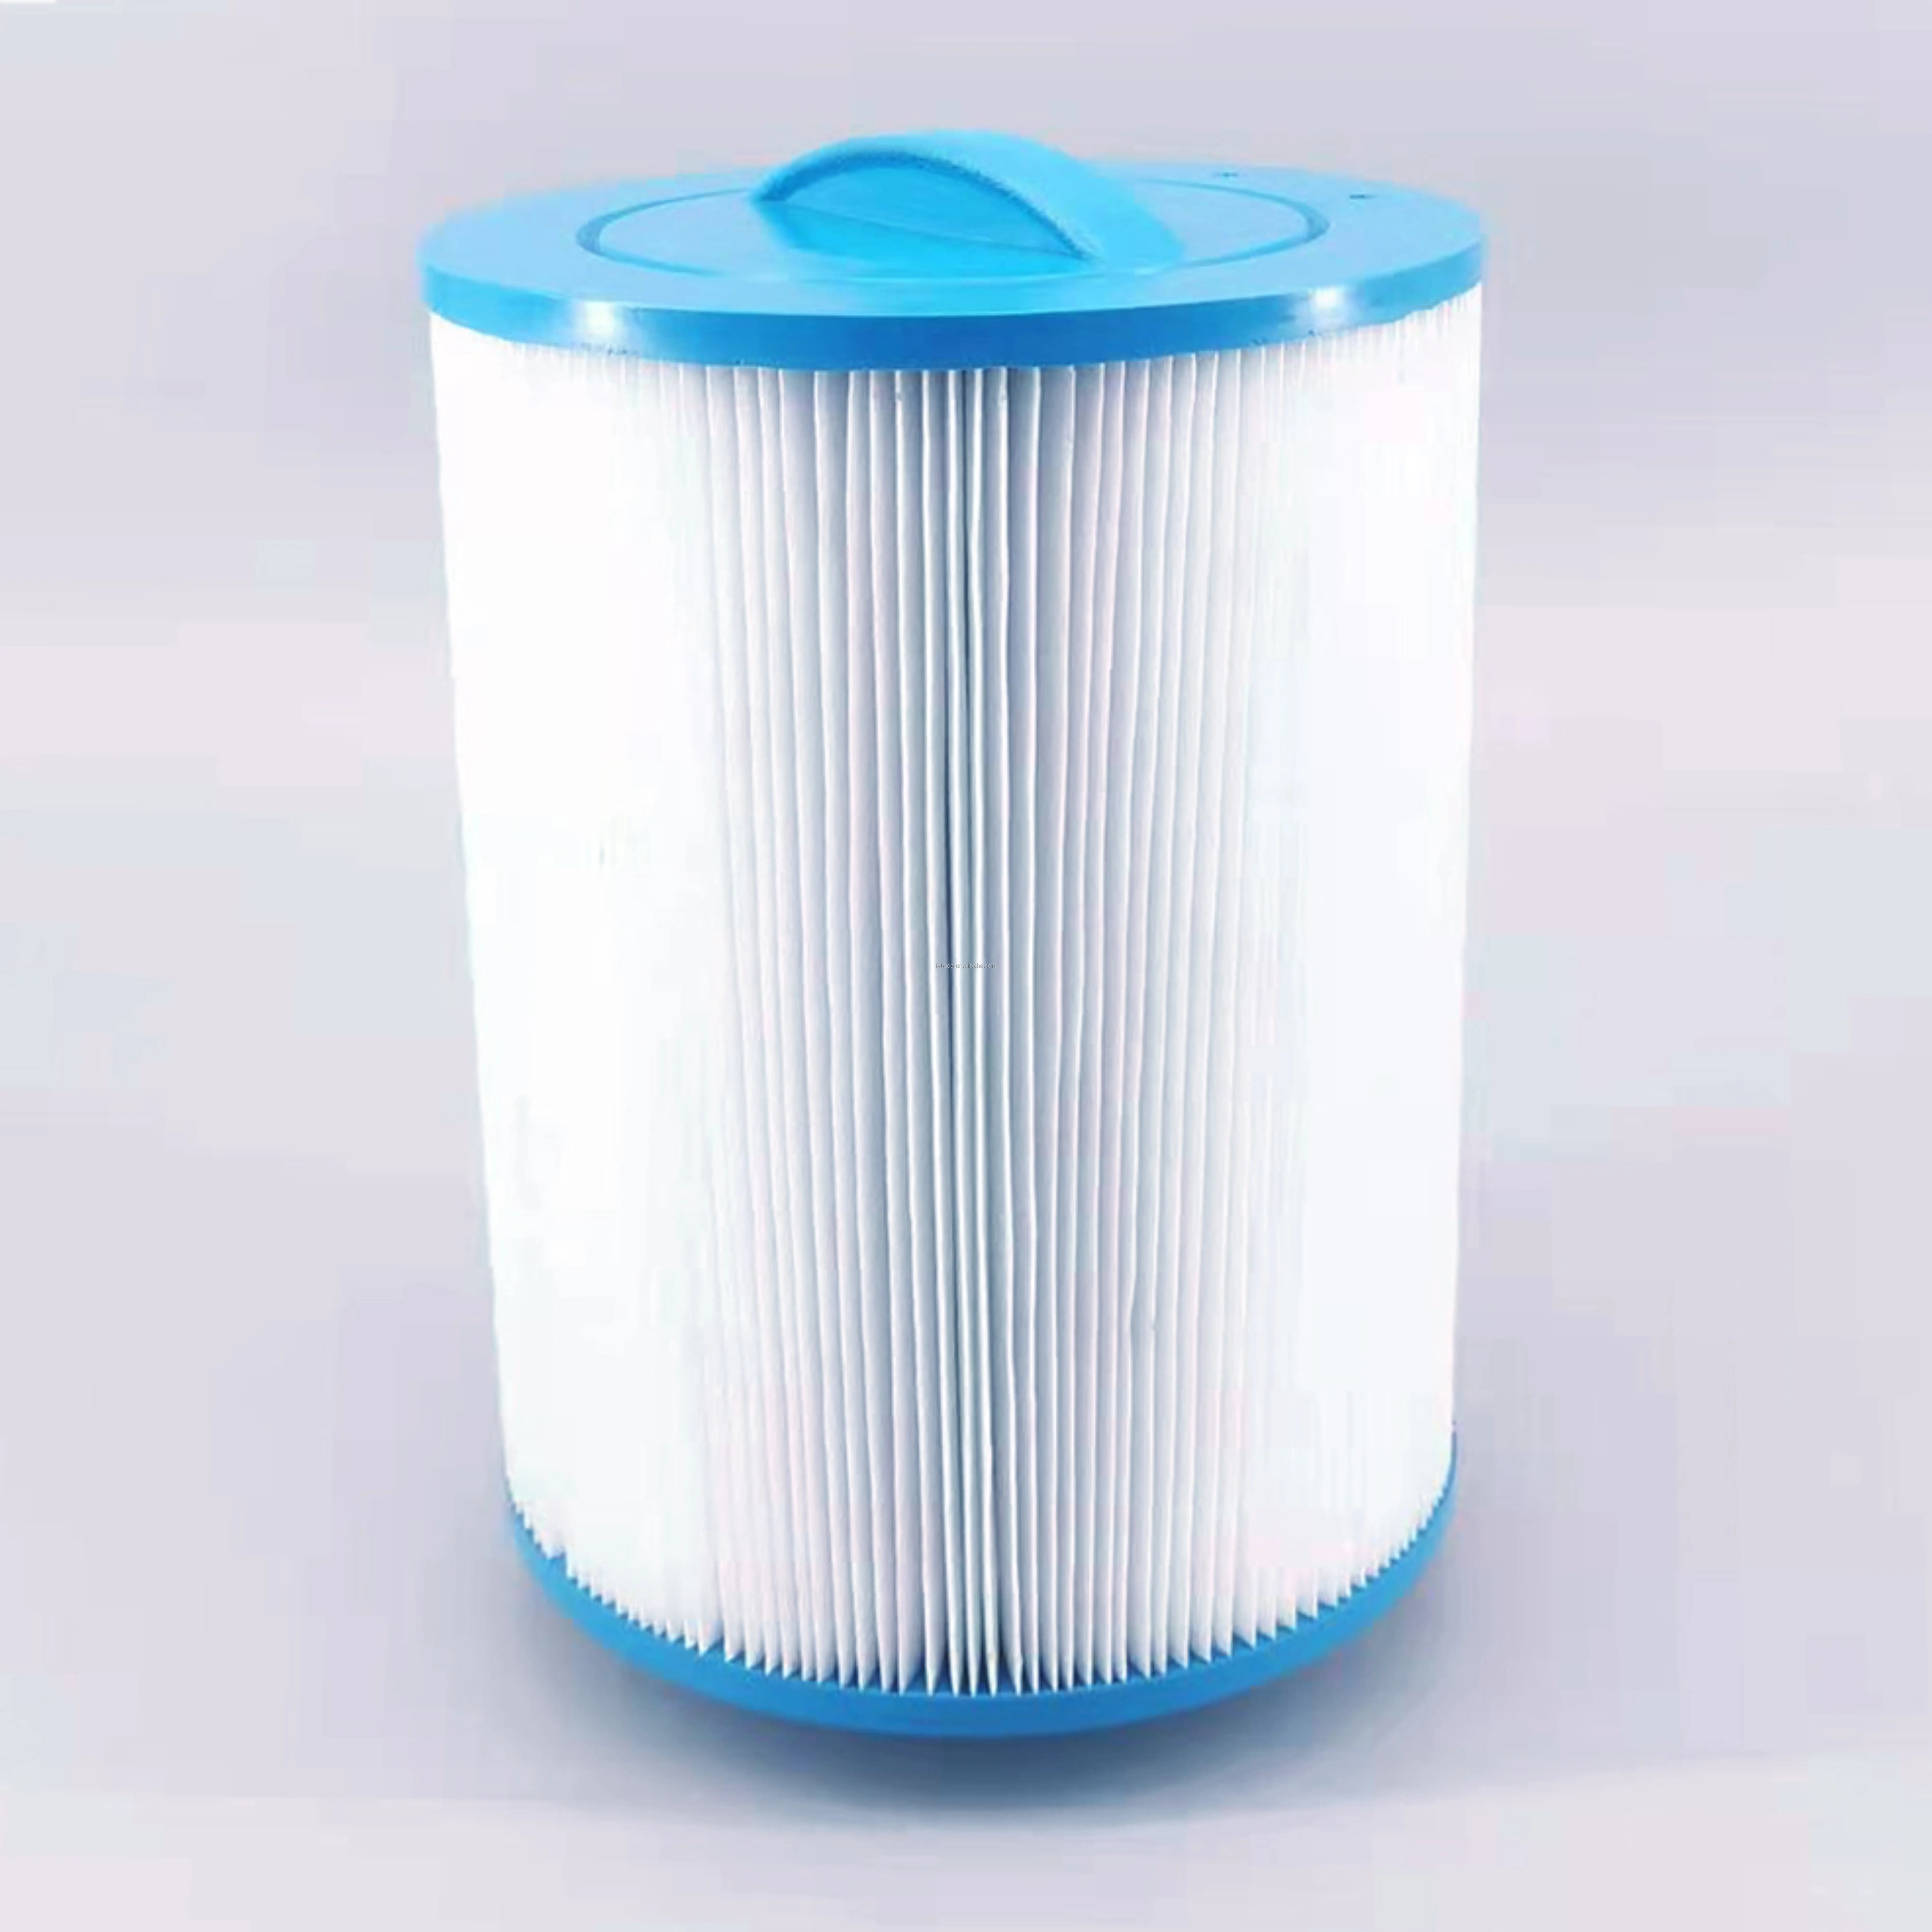 Filtro Spa cartuccia vasca idromassaggio filettatura SAE Unicel 6CH-940 filtro cartuccia filtro di ricambio